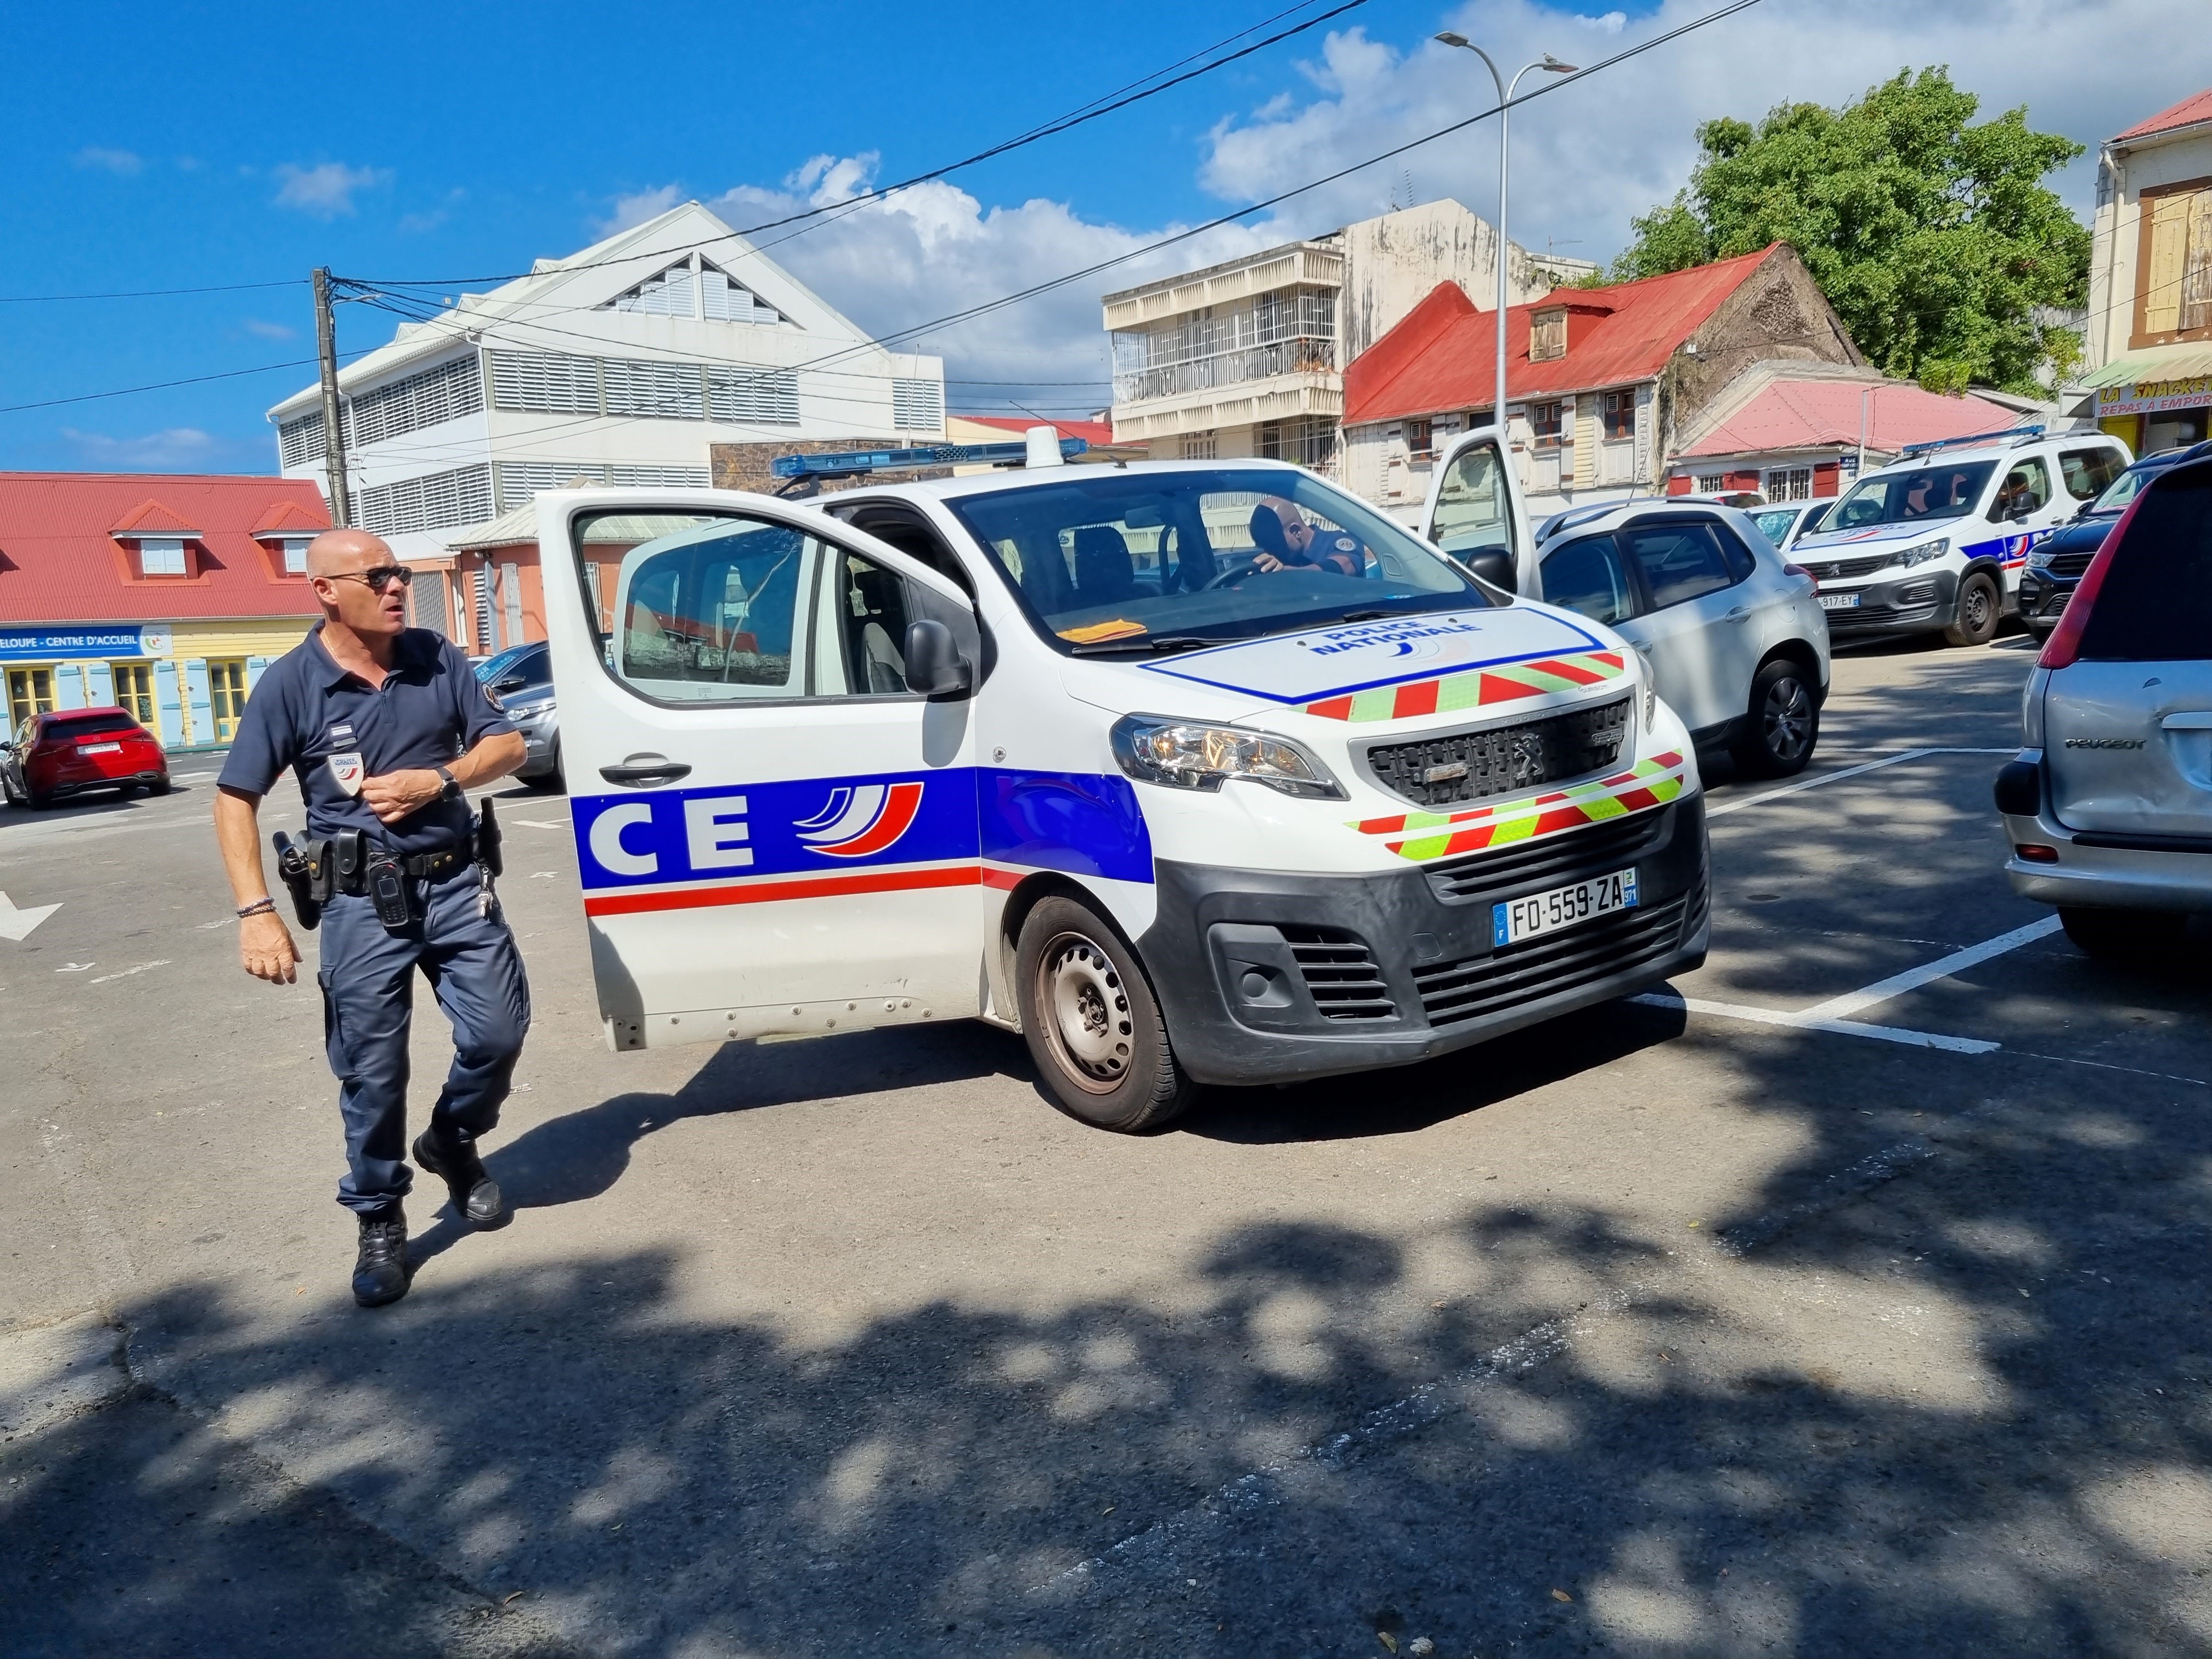     Contrôles routiers : plusieurs infractions sanctionnées à Basse-Terre

